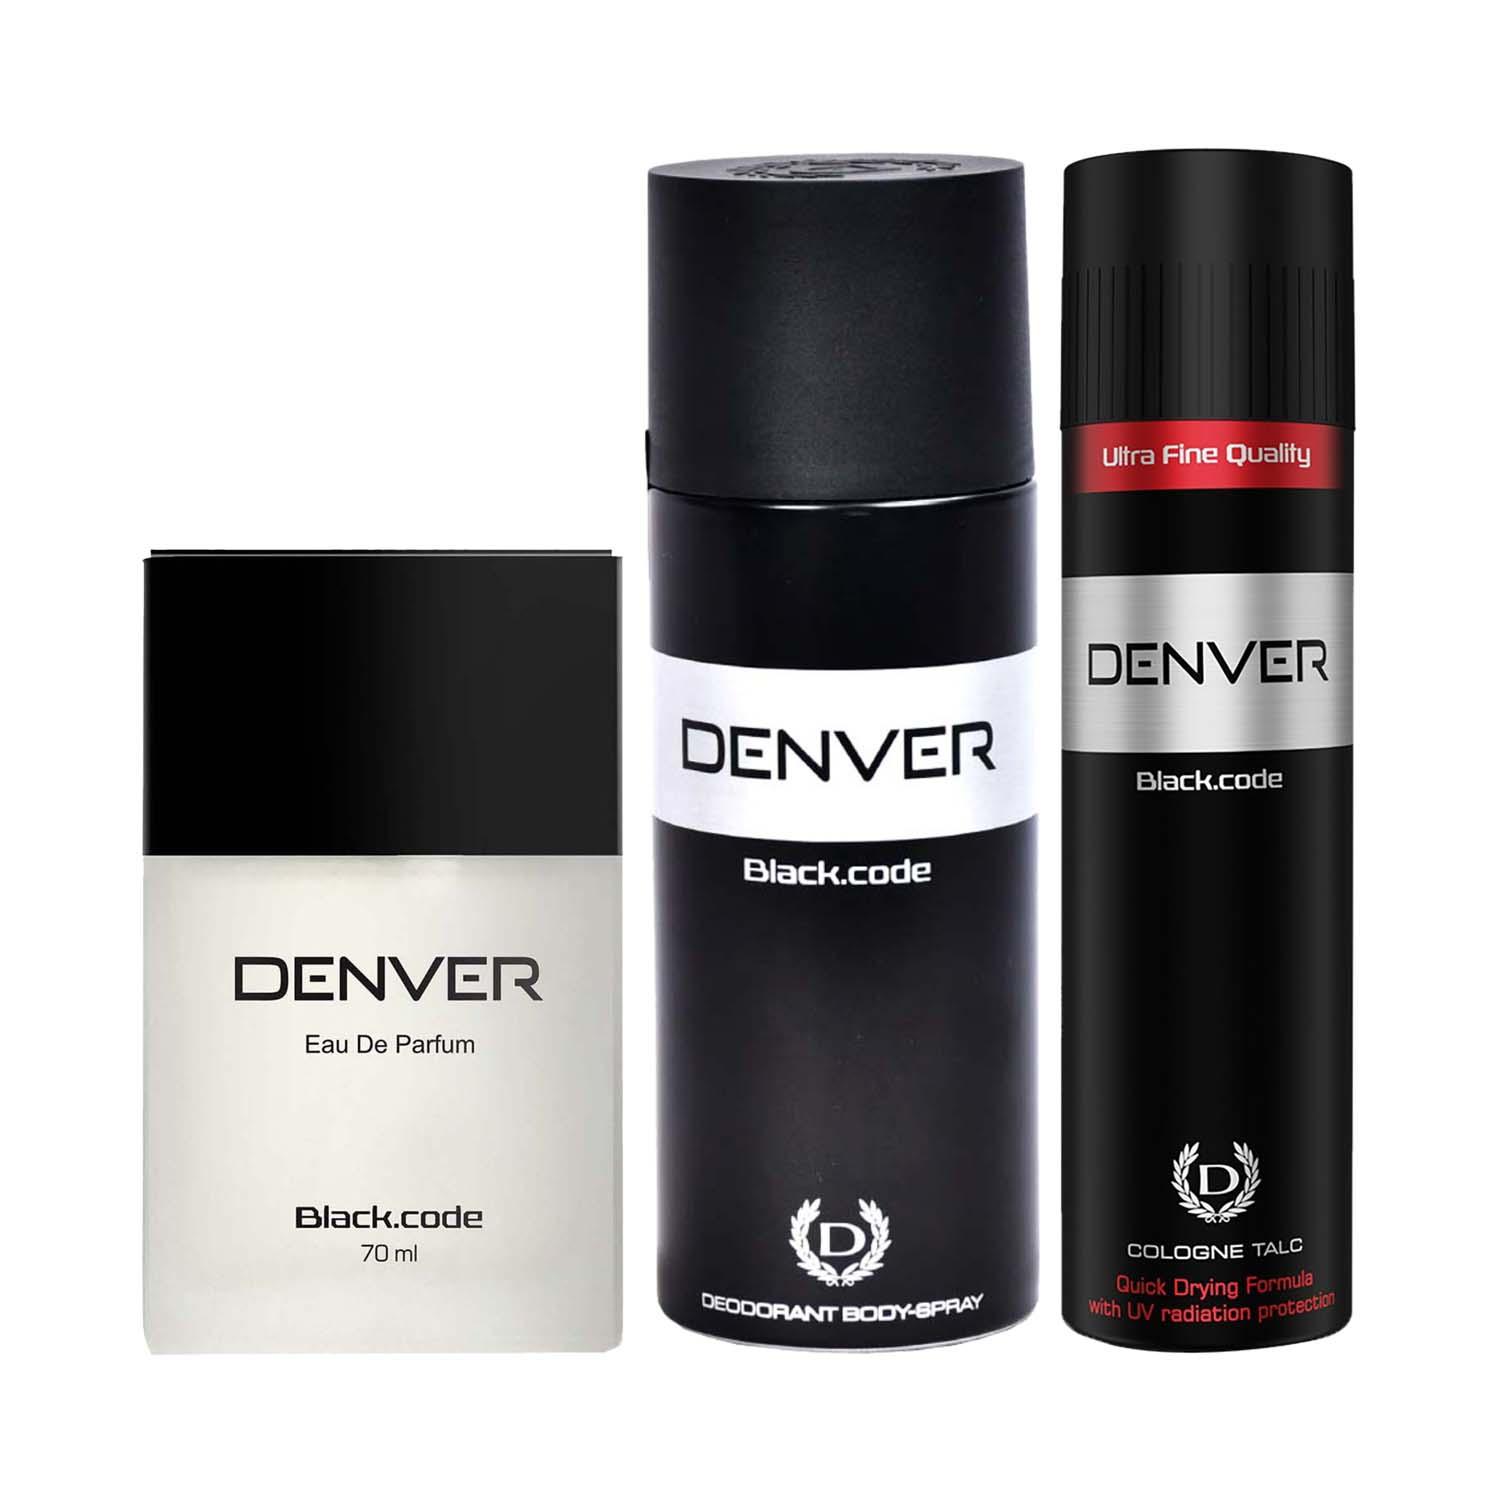 Denver | Denver Black Code Talc, Eau De Parfum & Black Code Deodorant Body Spray for Men Combo (200 ml)